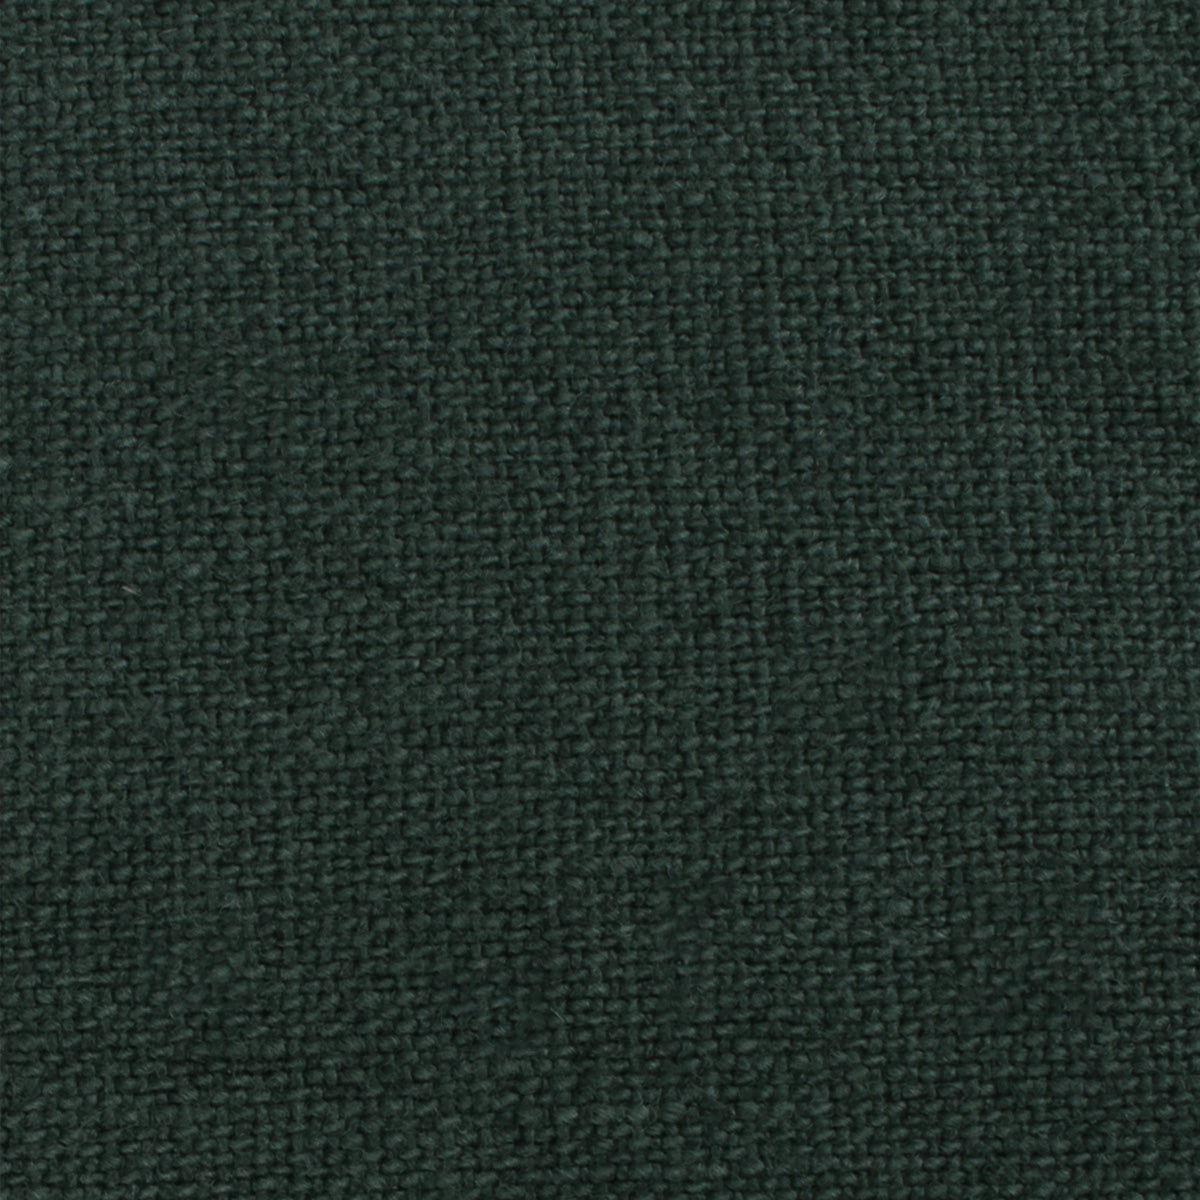 Emerald Dark Green Linen Fabric Swatch